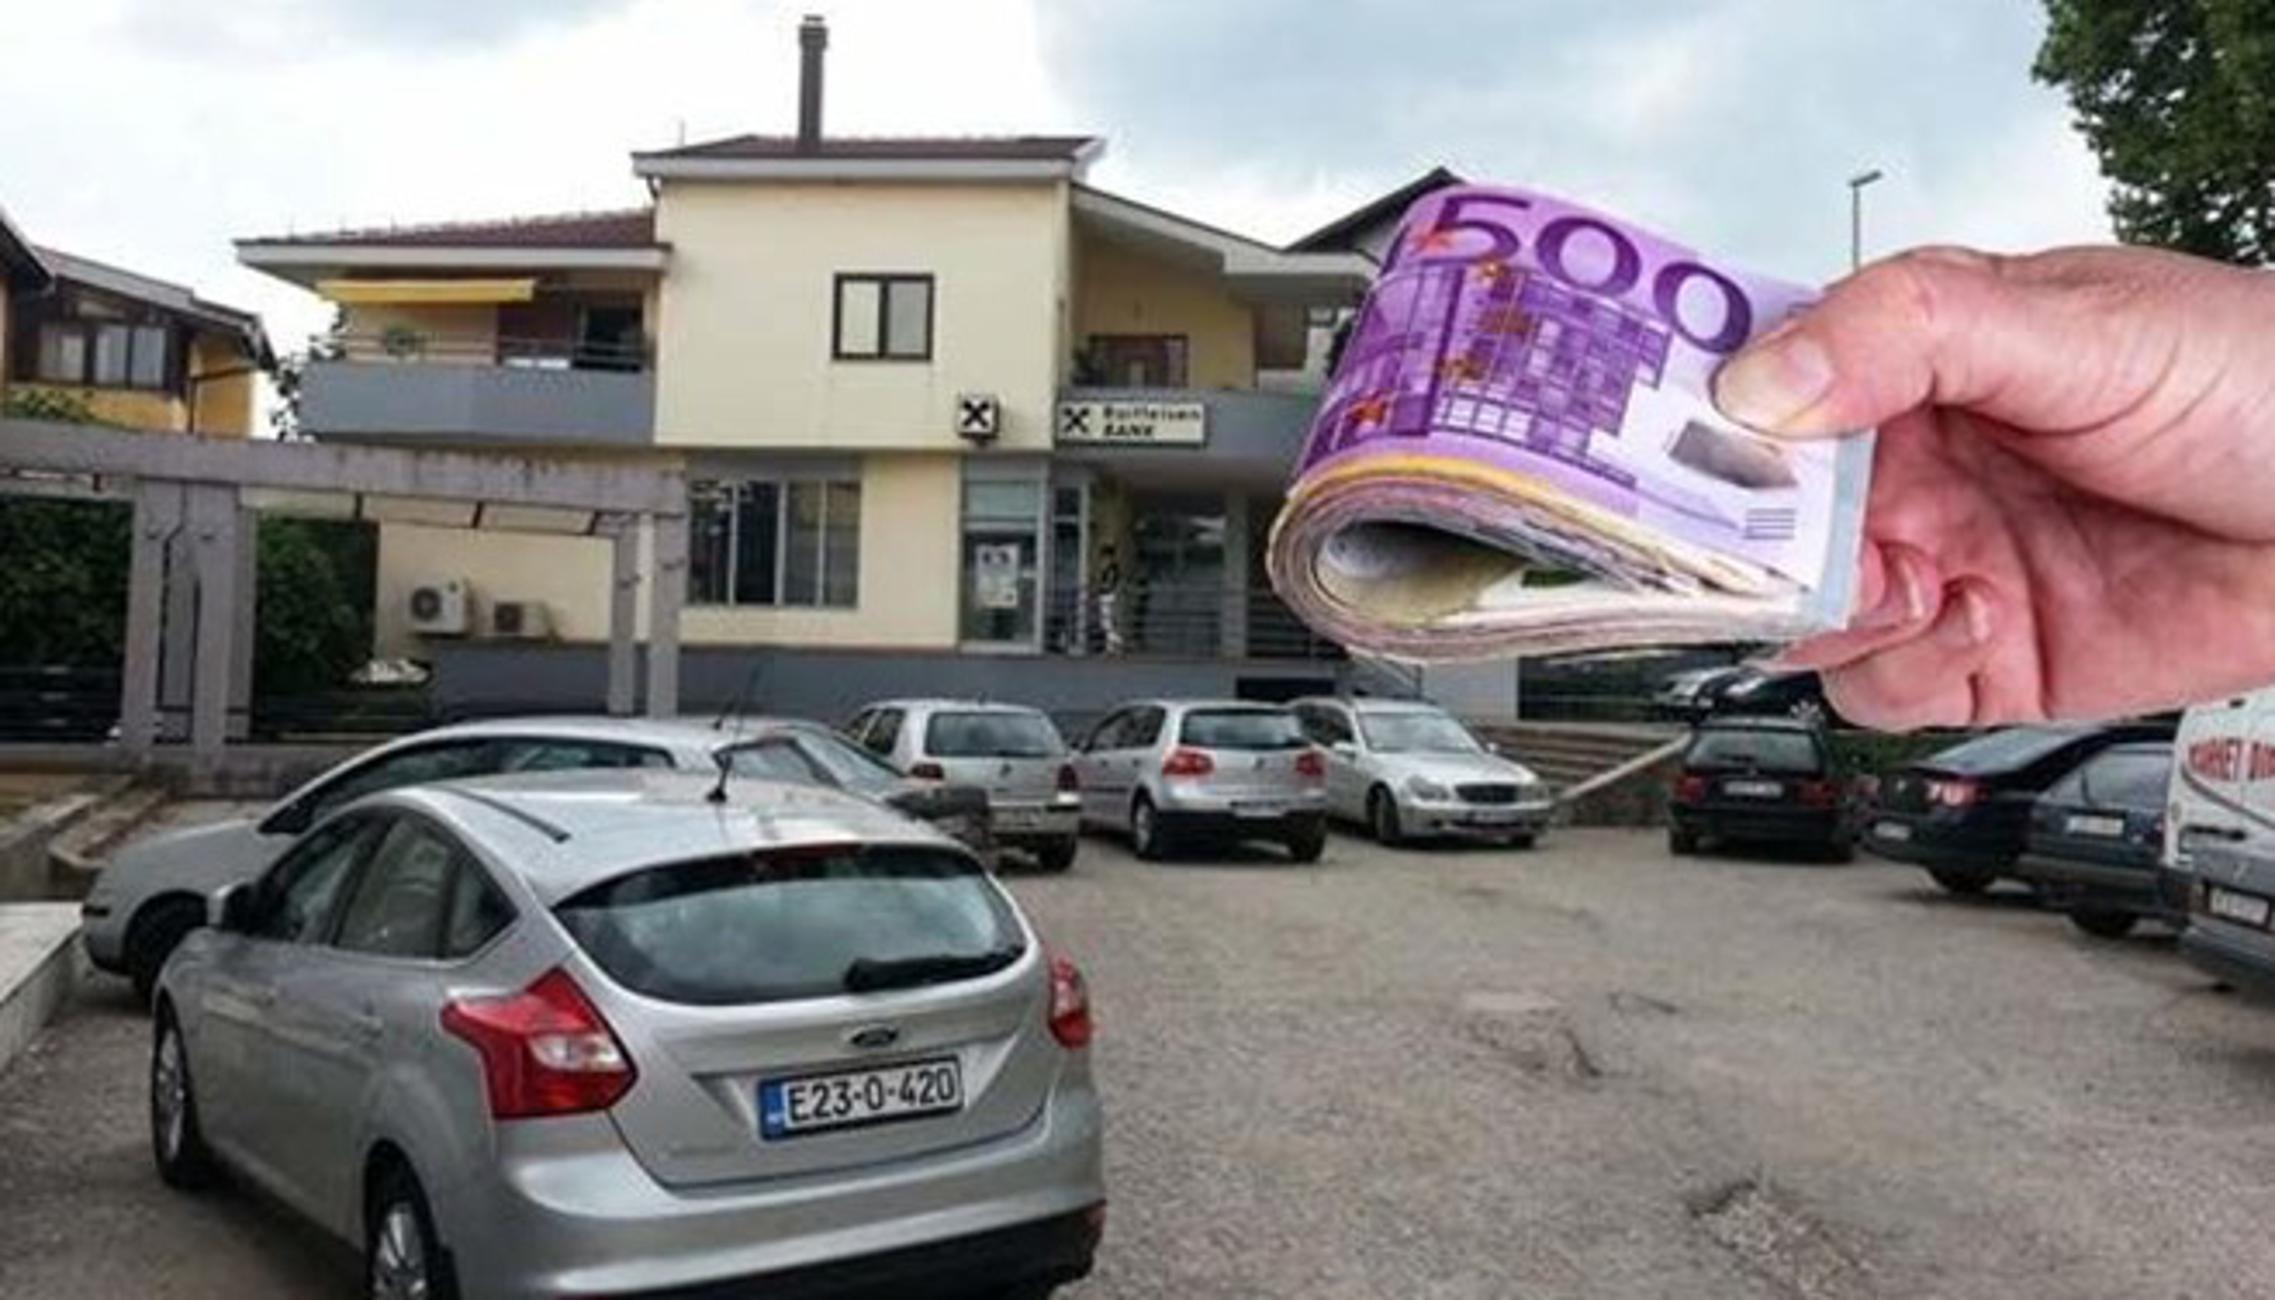 Parkiralište na kojem je Hercegovac naša 150 000 eura.